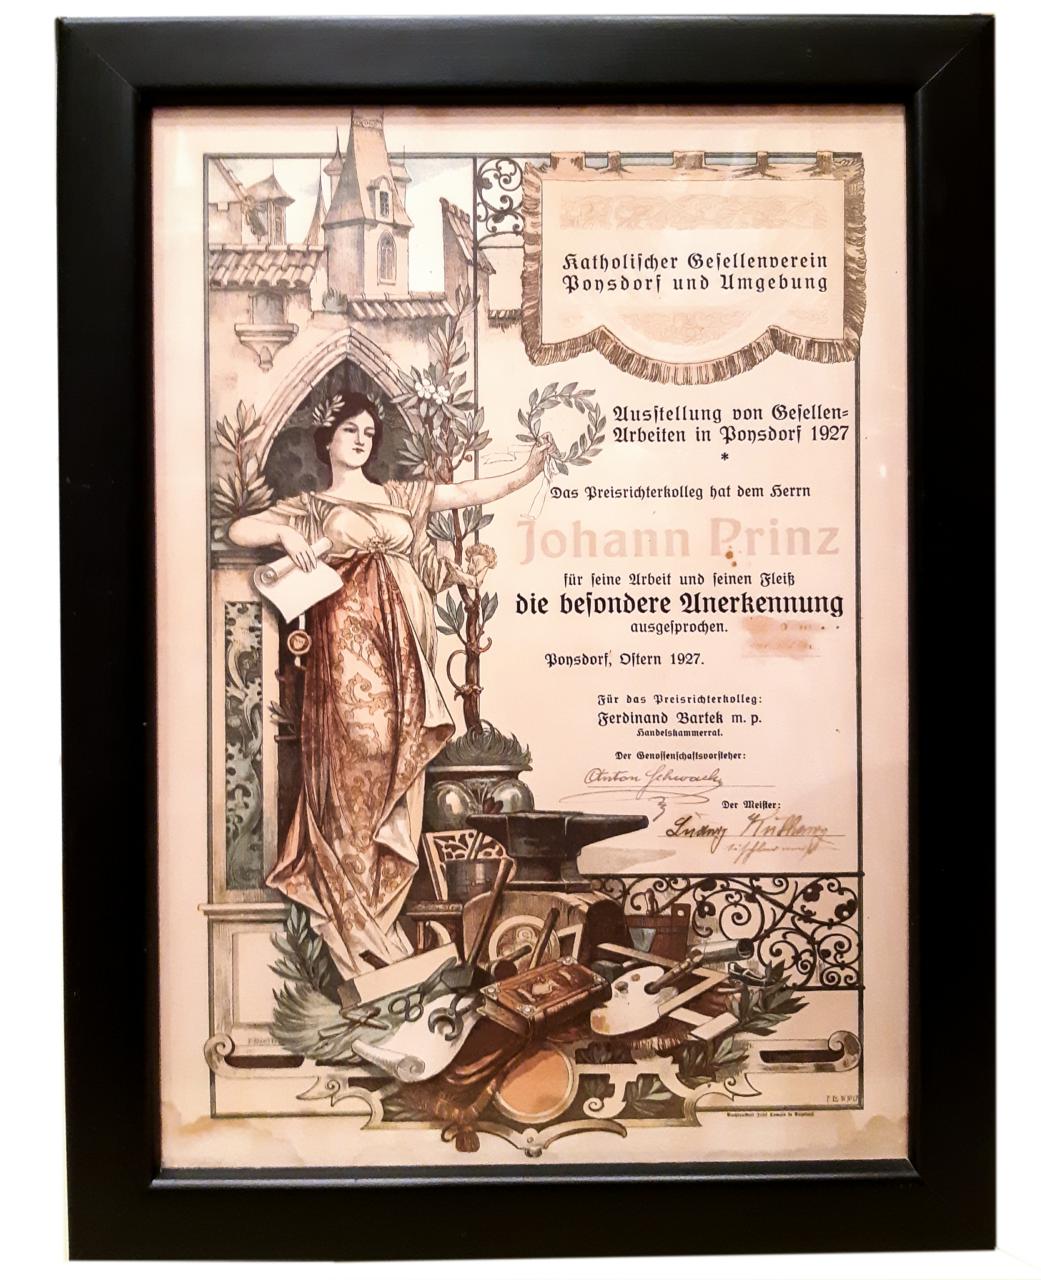 Urkunde des kath. Gesellenvereins Poysdorf und Umgebung 1927